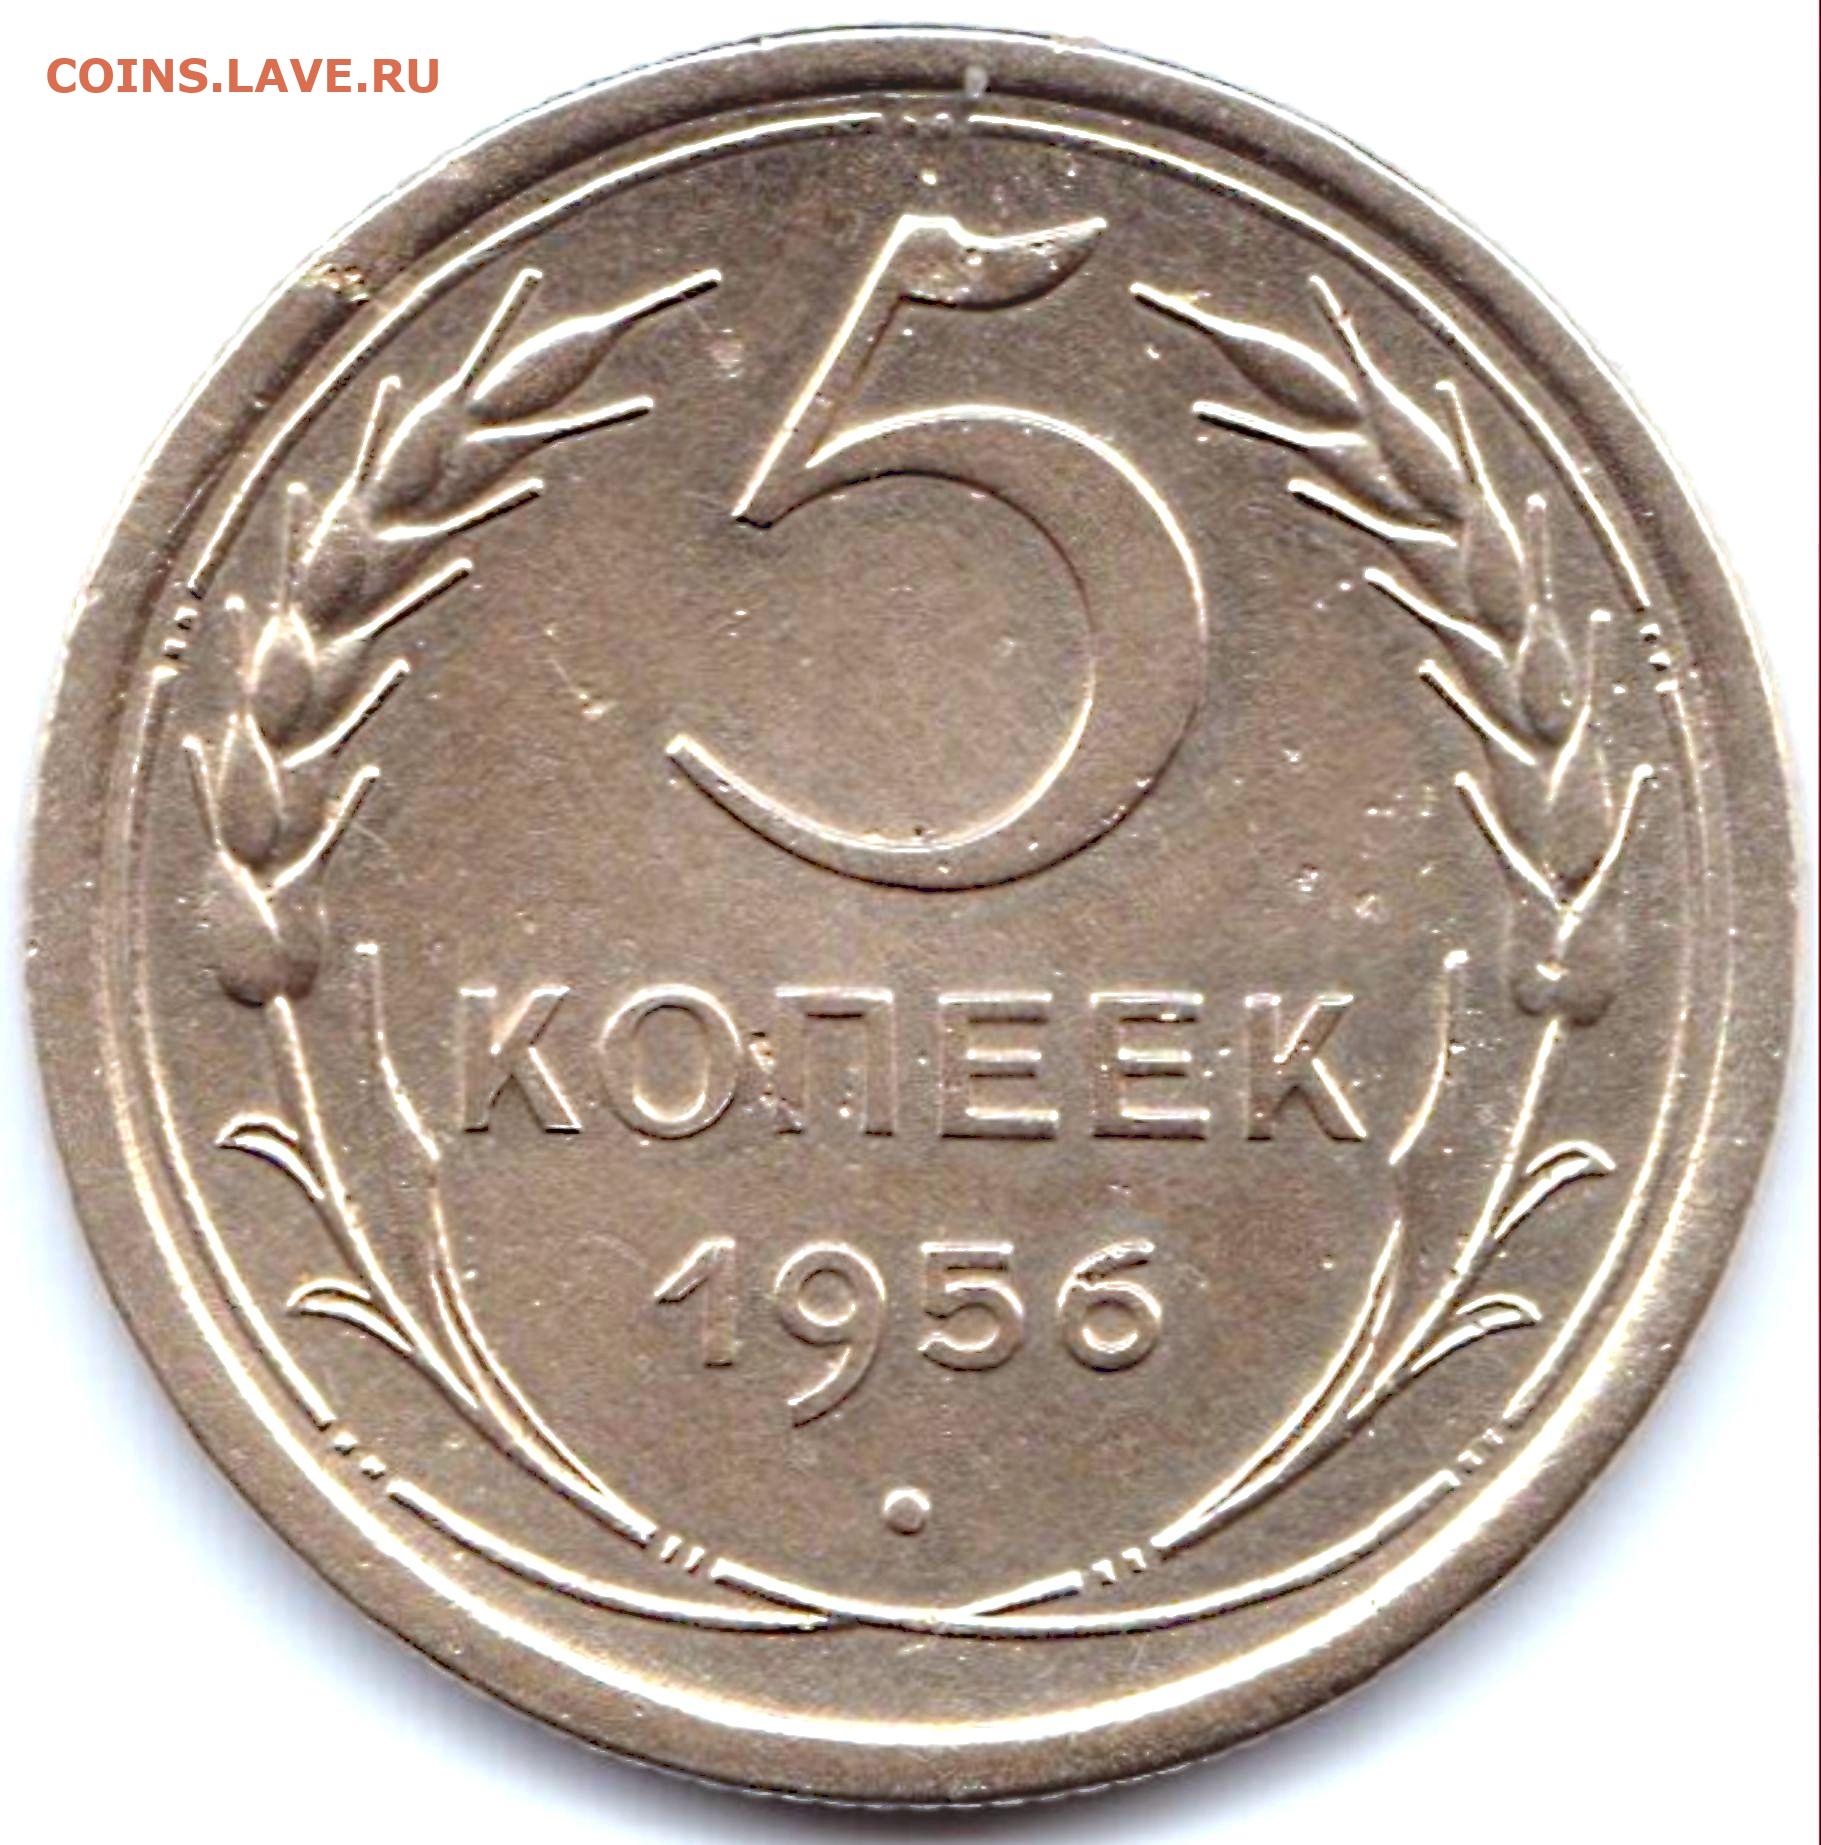 3 рубля 5 копеек. 0.5 Копейки. Монеты 1956г 5 копеек СССР. 25 Копеек 1955. 20 Копеек 1956г.